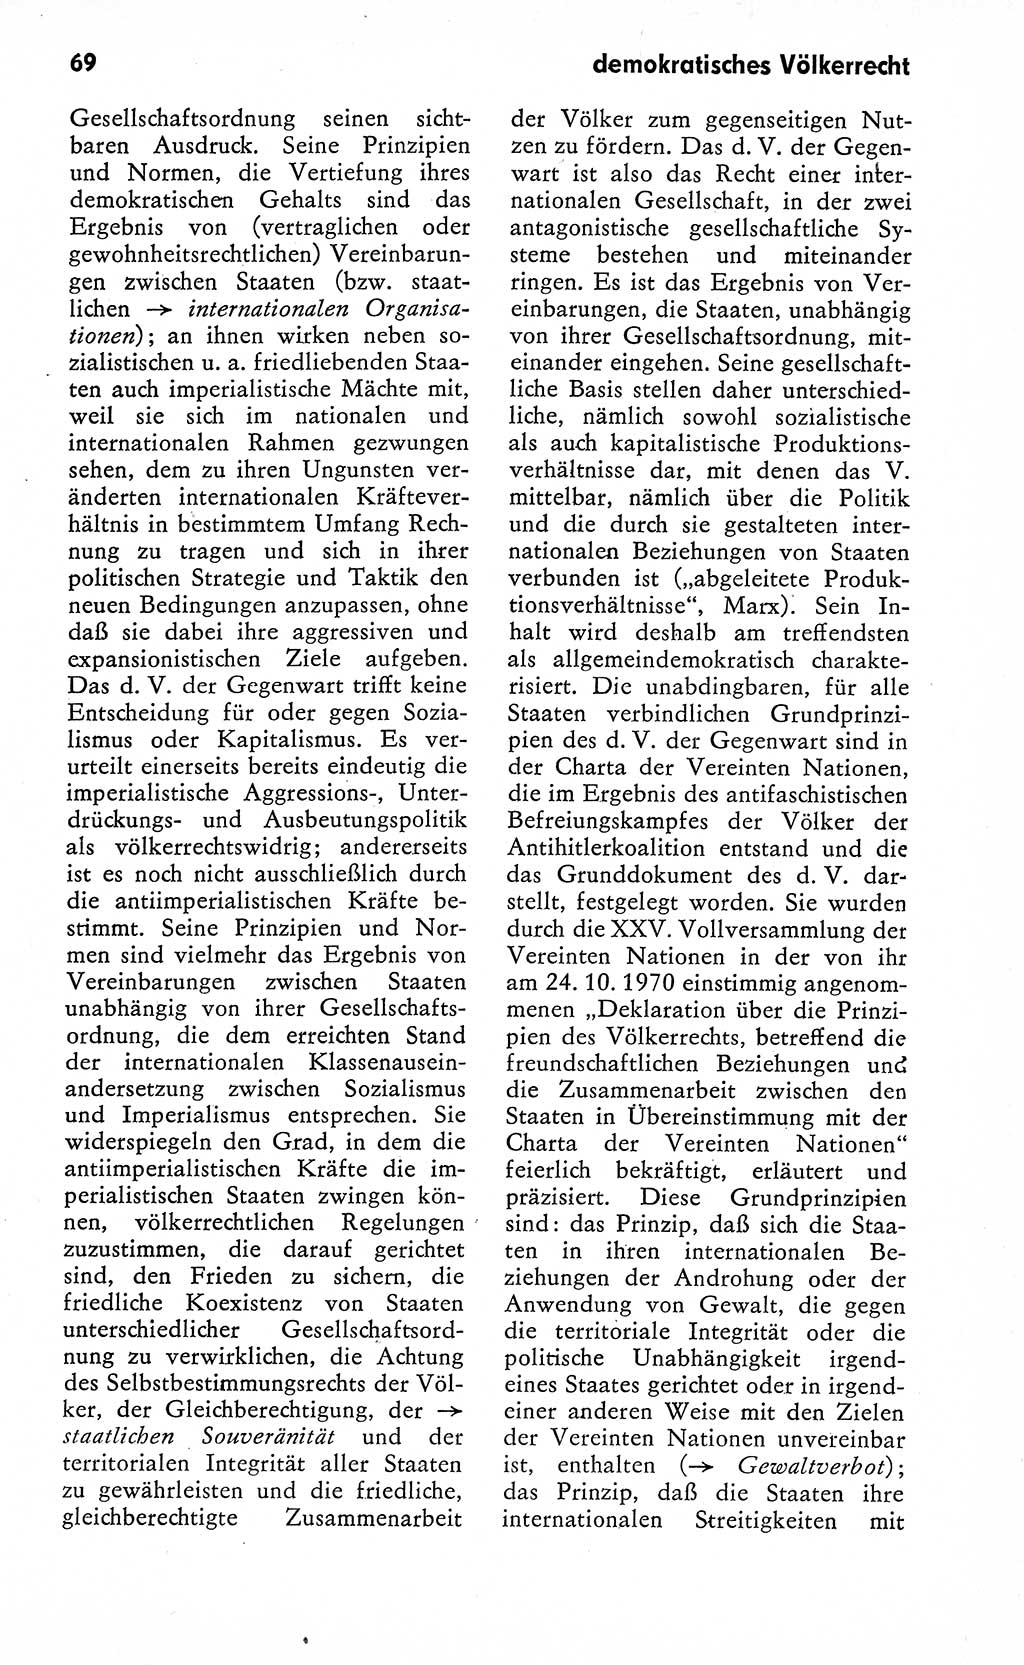 Wörterbuch zum sozialistischen Staat [Deutsche Demokratische Republik (DDR)] 1974, Seite 69 (Wb. soz. St. DDR 1974, S. 69)